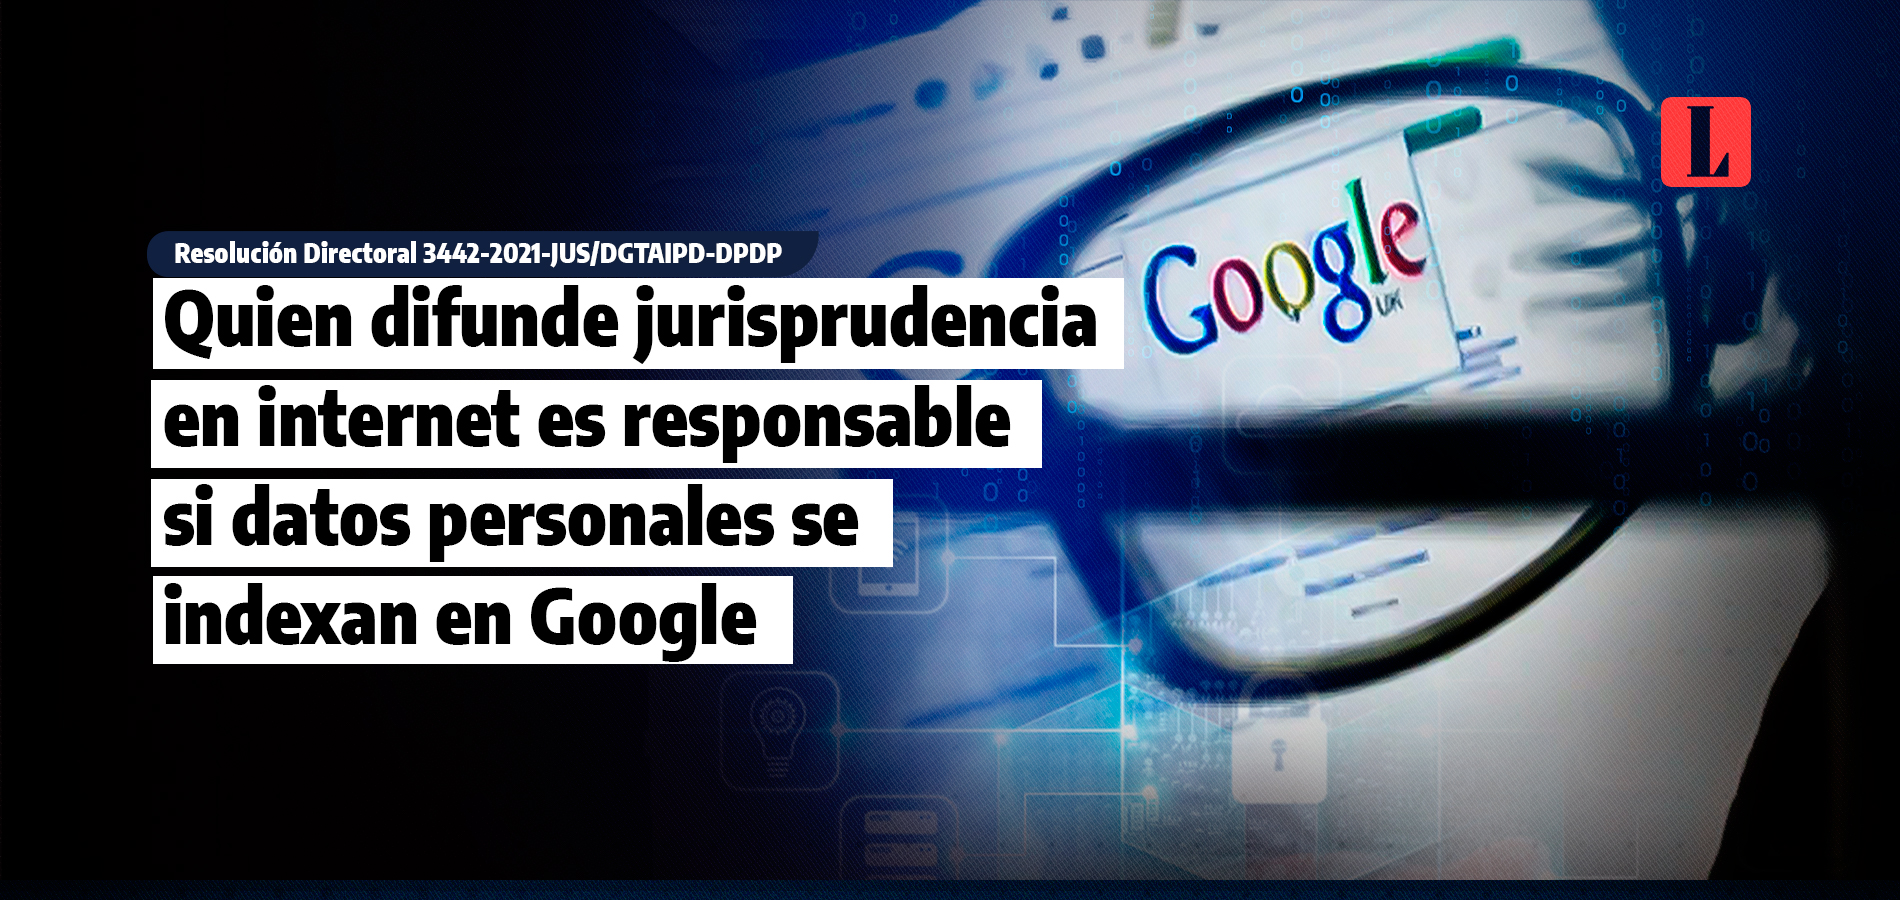 Abogados que difundan jurisprudencia en internet son responsables si datos personales se indexan en Google